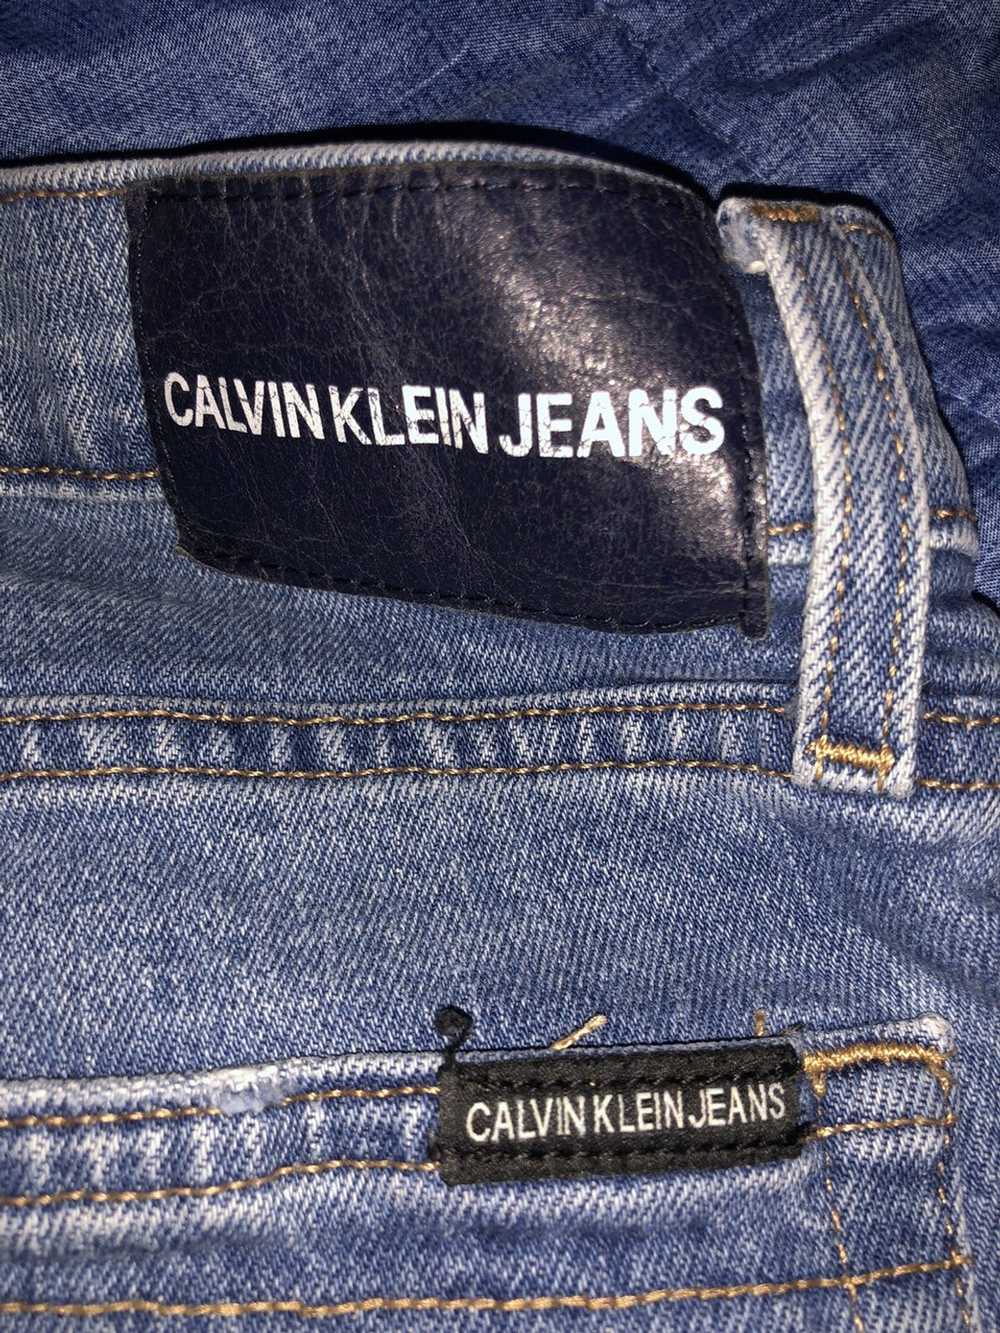 Calvin Klein Vintage Calvin Klein Denim Jeans - image 4